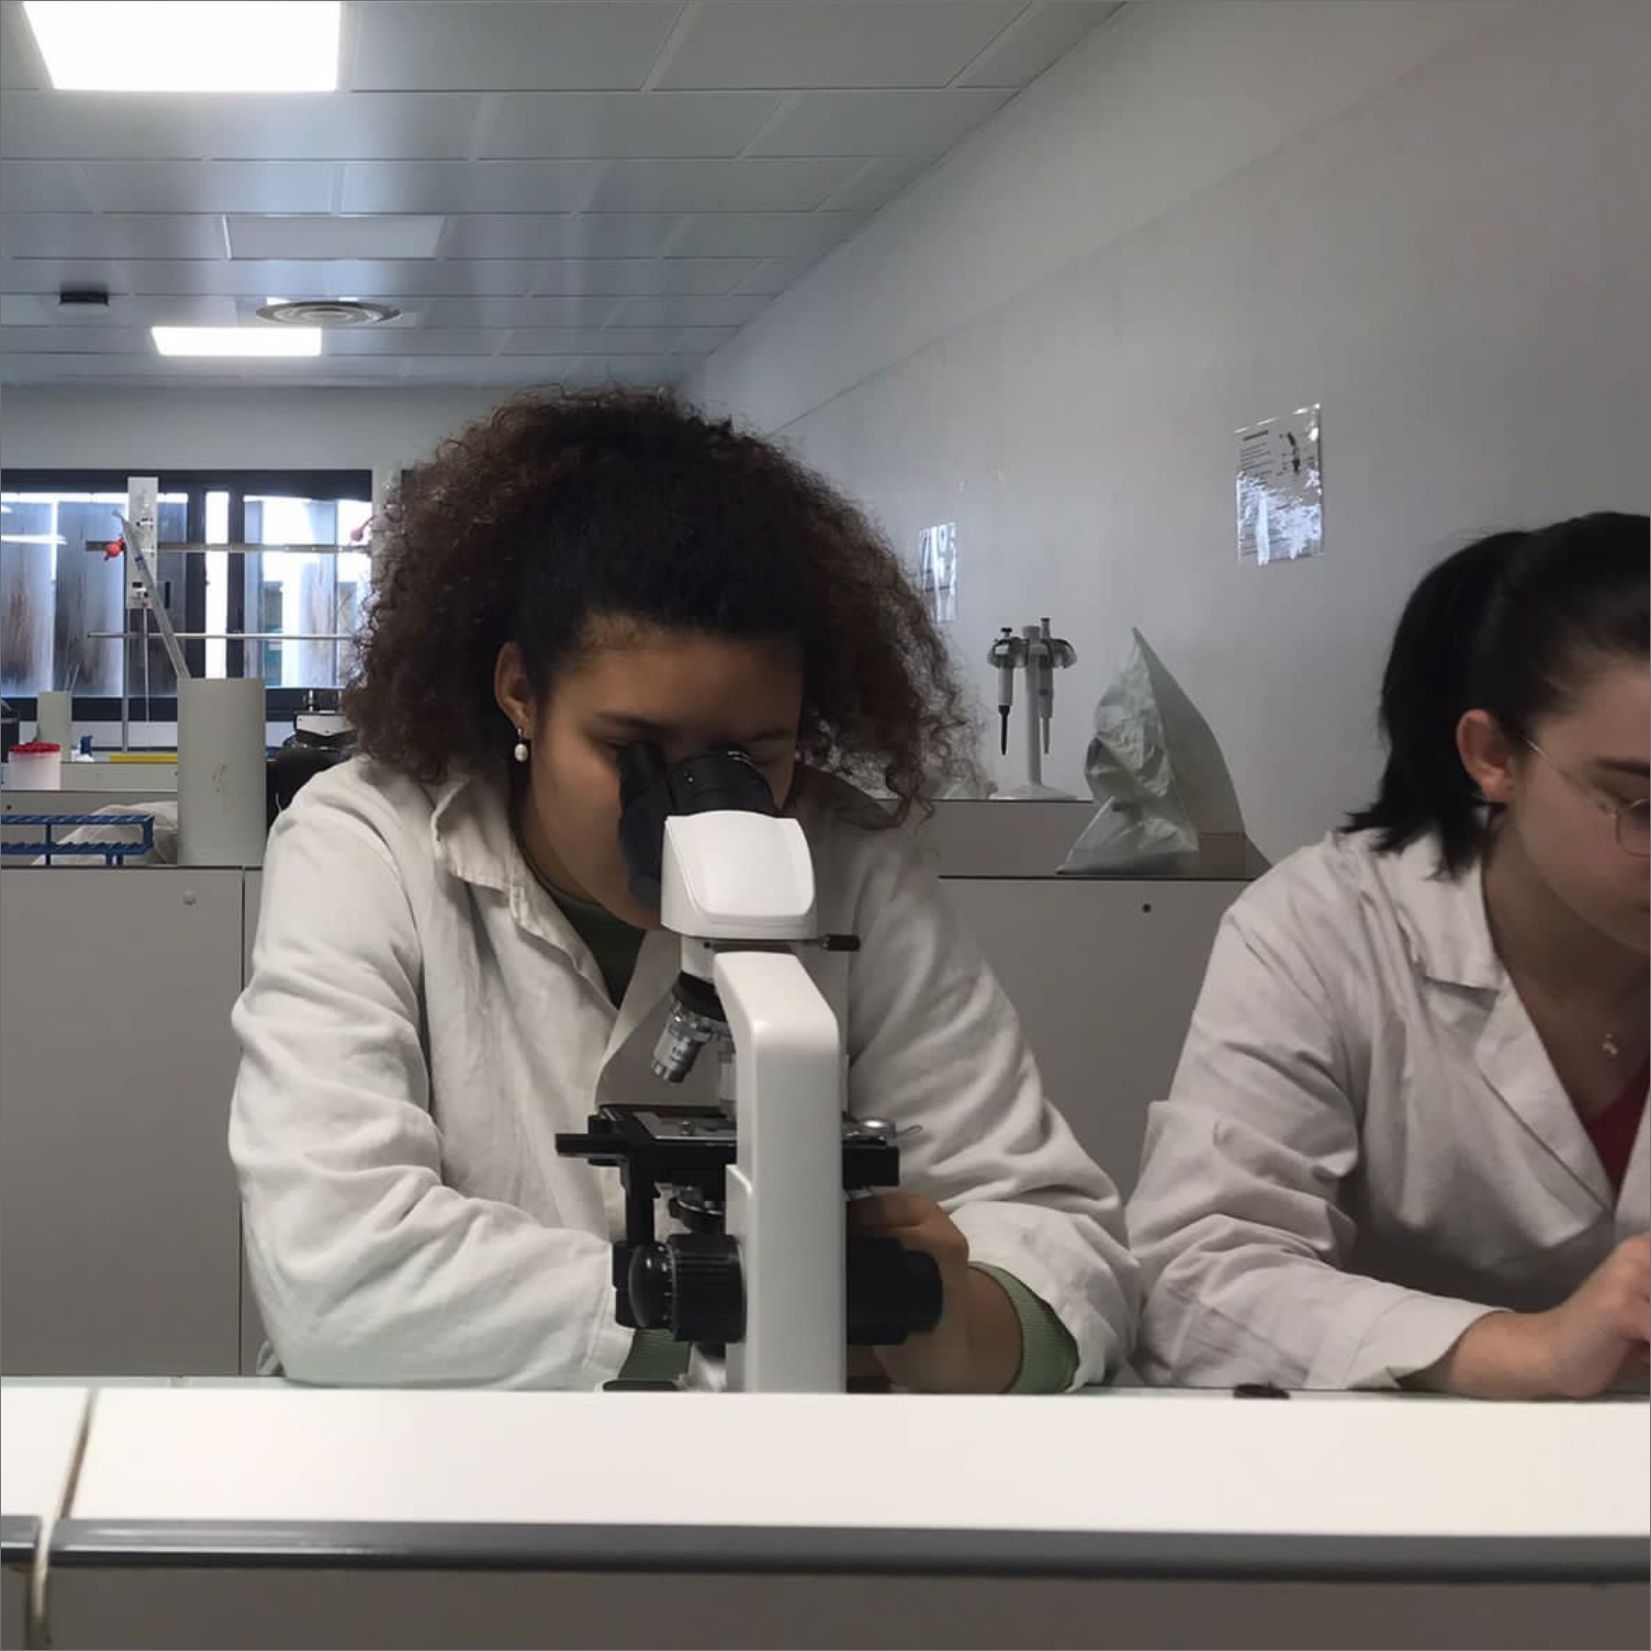 Etudiants avec un microscope